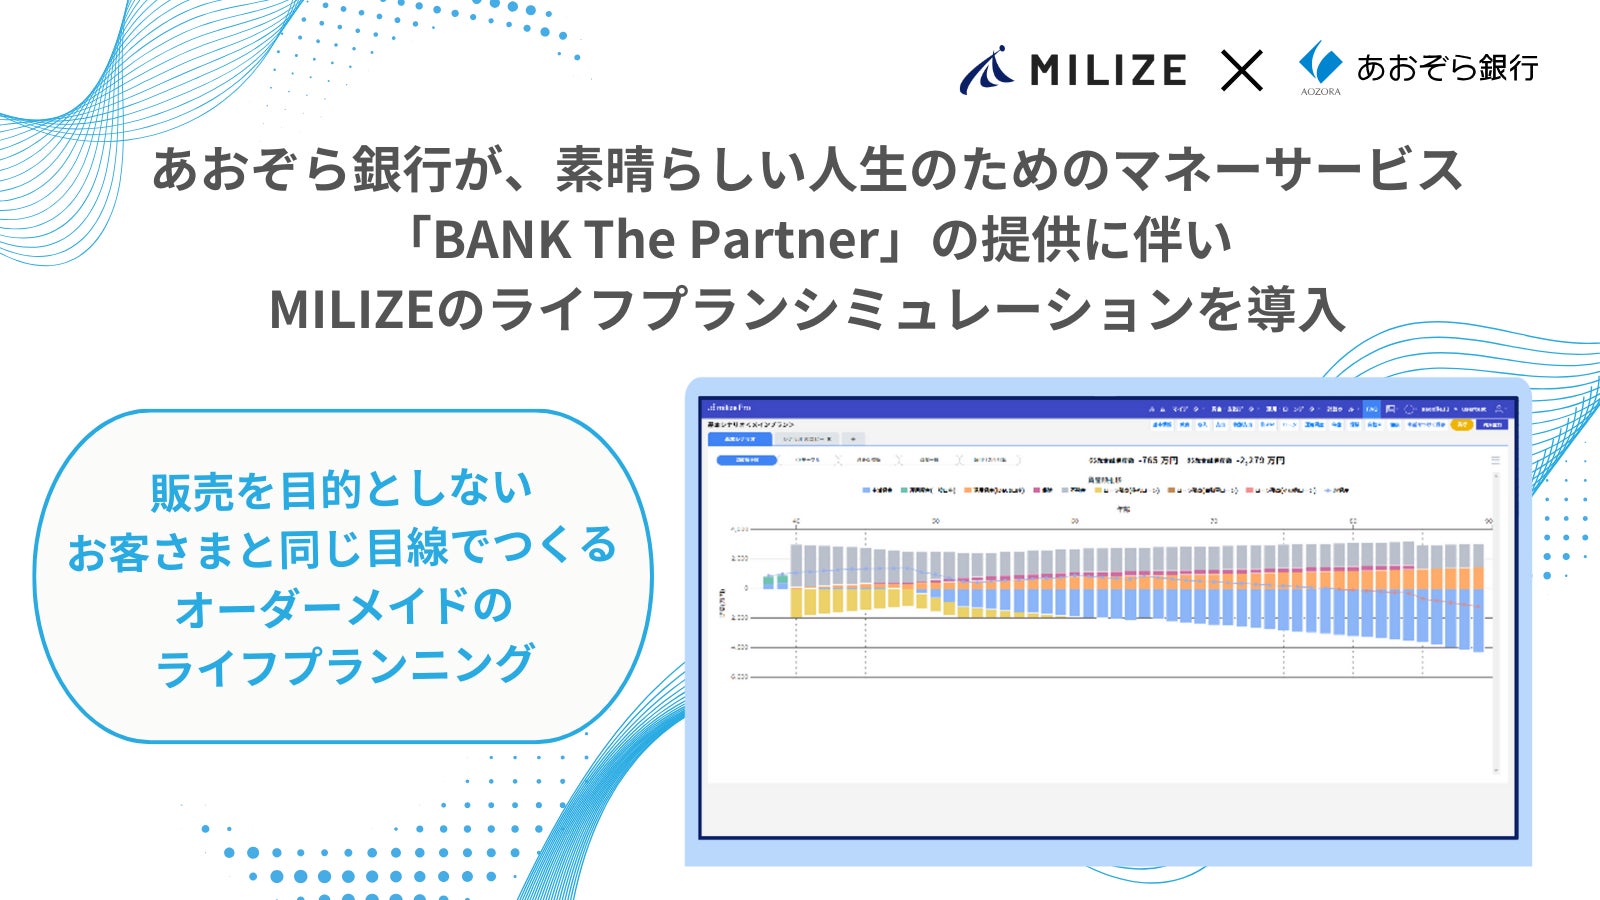 あおぞら銀行が、素晴らしい人生のためのマネーサービス「BANK The Partner」の提供に伴いMILIZEのライフプランシミュレーションを導入